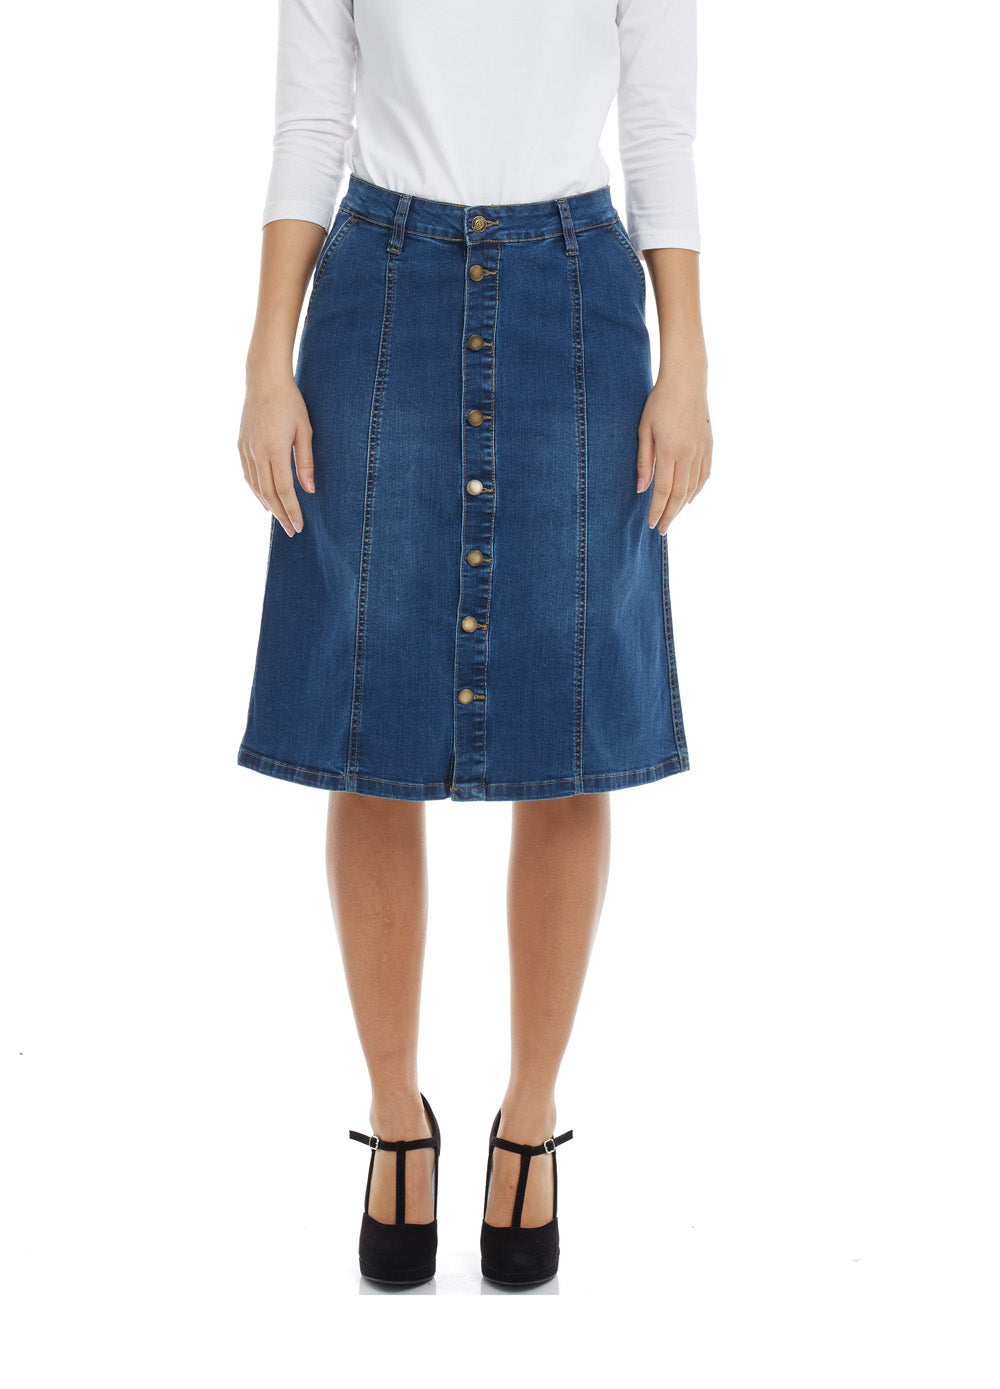 womens blue jean skirt